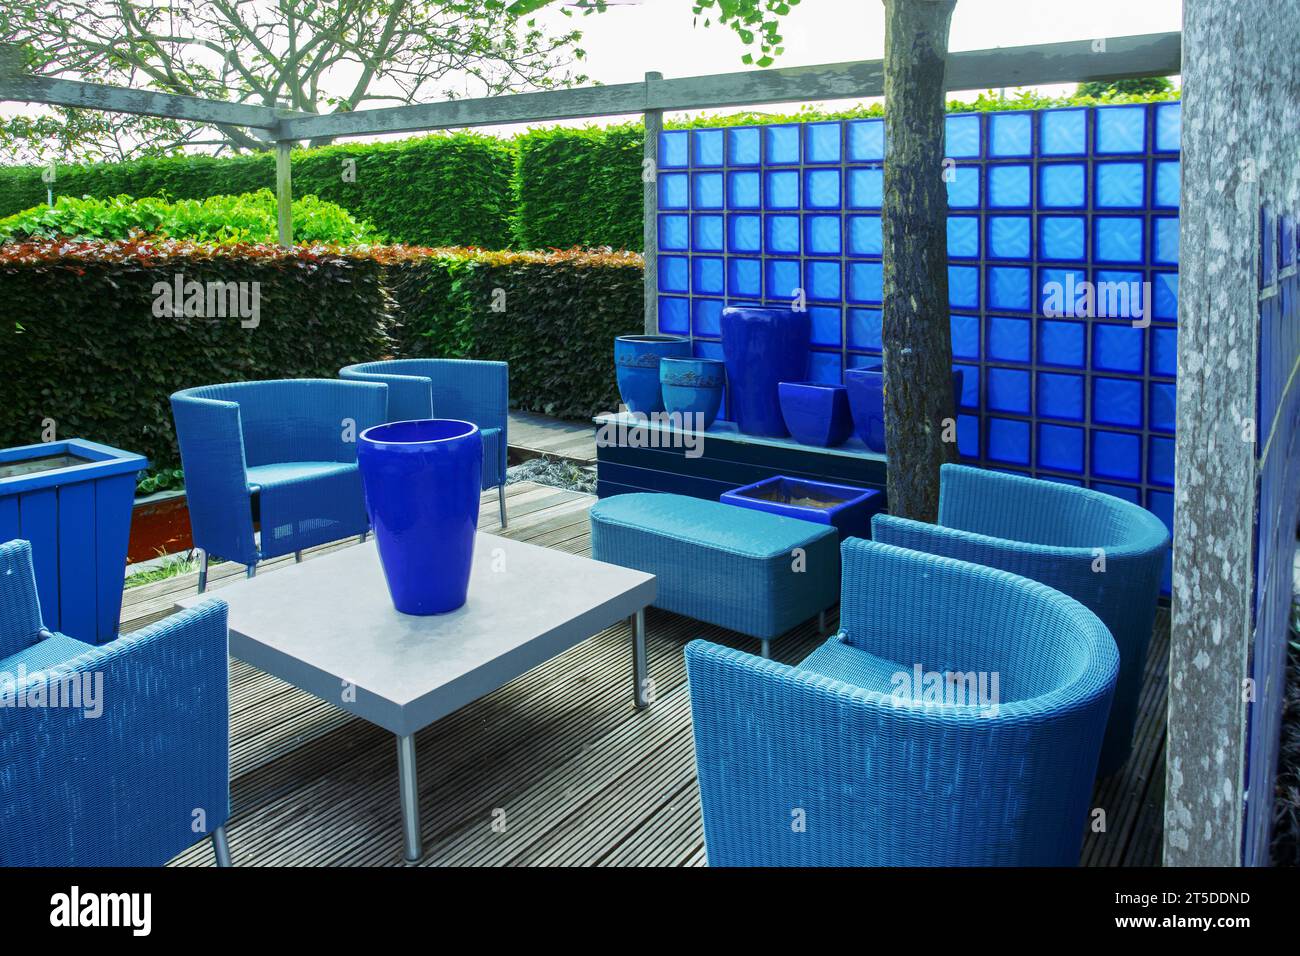 05-28-2016 pays-Bas Awe vases bleus et chaises d'extérieur bleu clair dans un jardin dans les jardins Appeltern aux pays-Bas. Clôtures topiaires de shr Banque D'Images